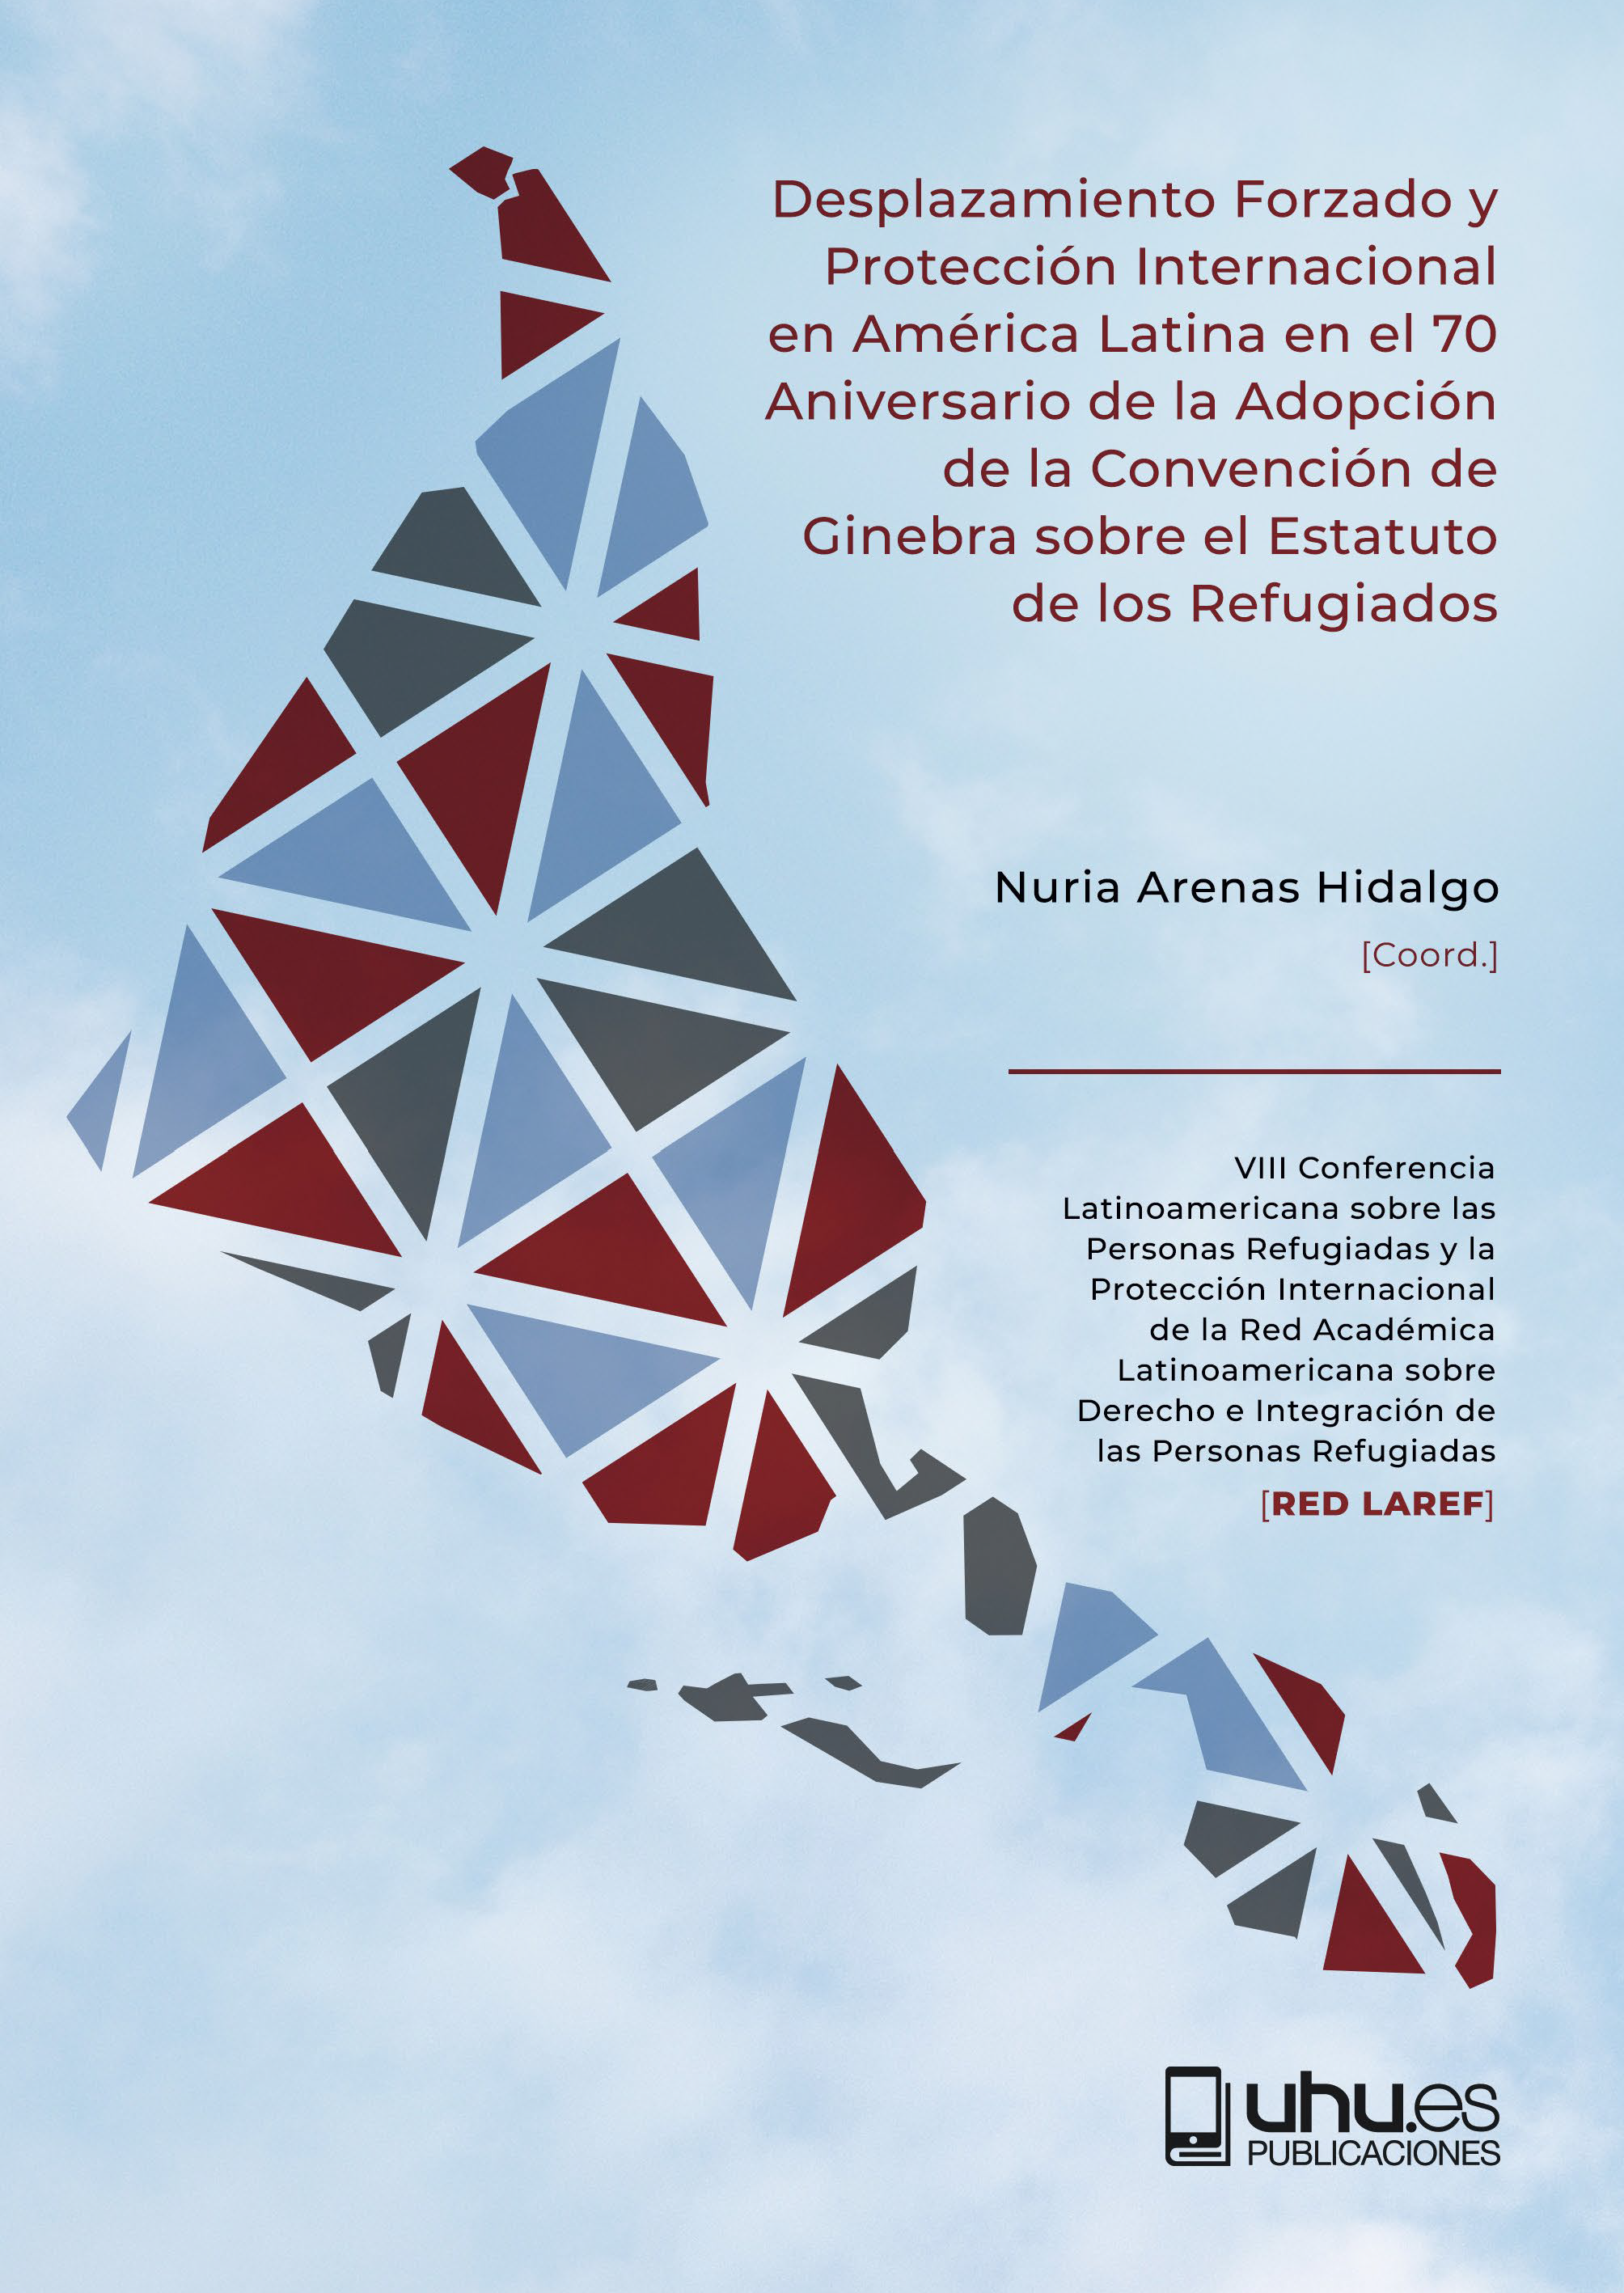 Imagen de portada del libro Desplazamiento Forzado y Protección Internacional en América Latina en el 70 Aniversario de la Adopción dela Convención de Ginebra sobre el Estatuto de los Refugiados